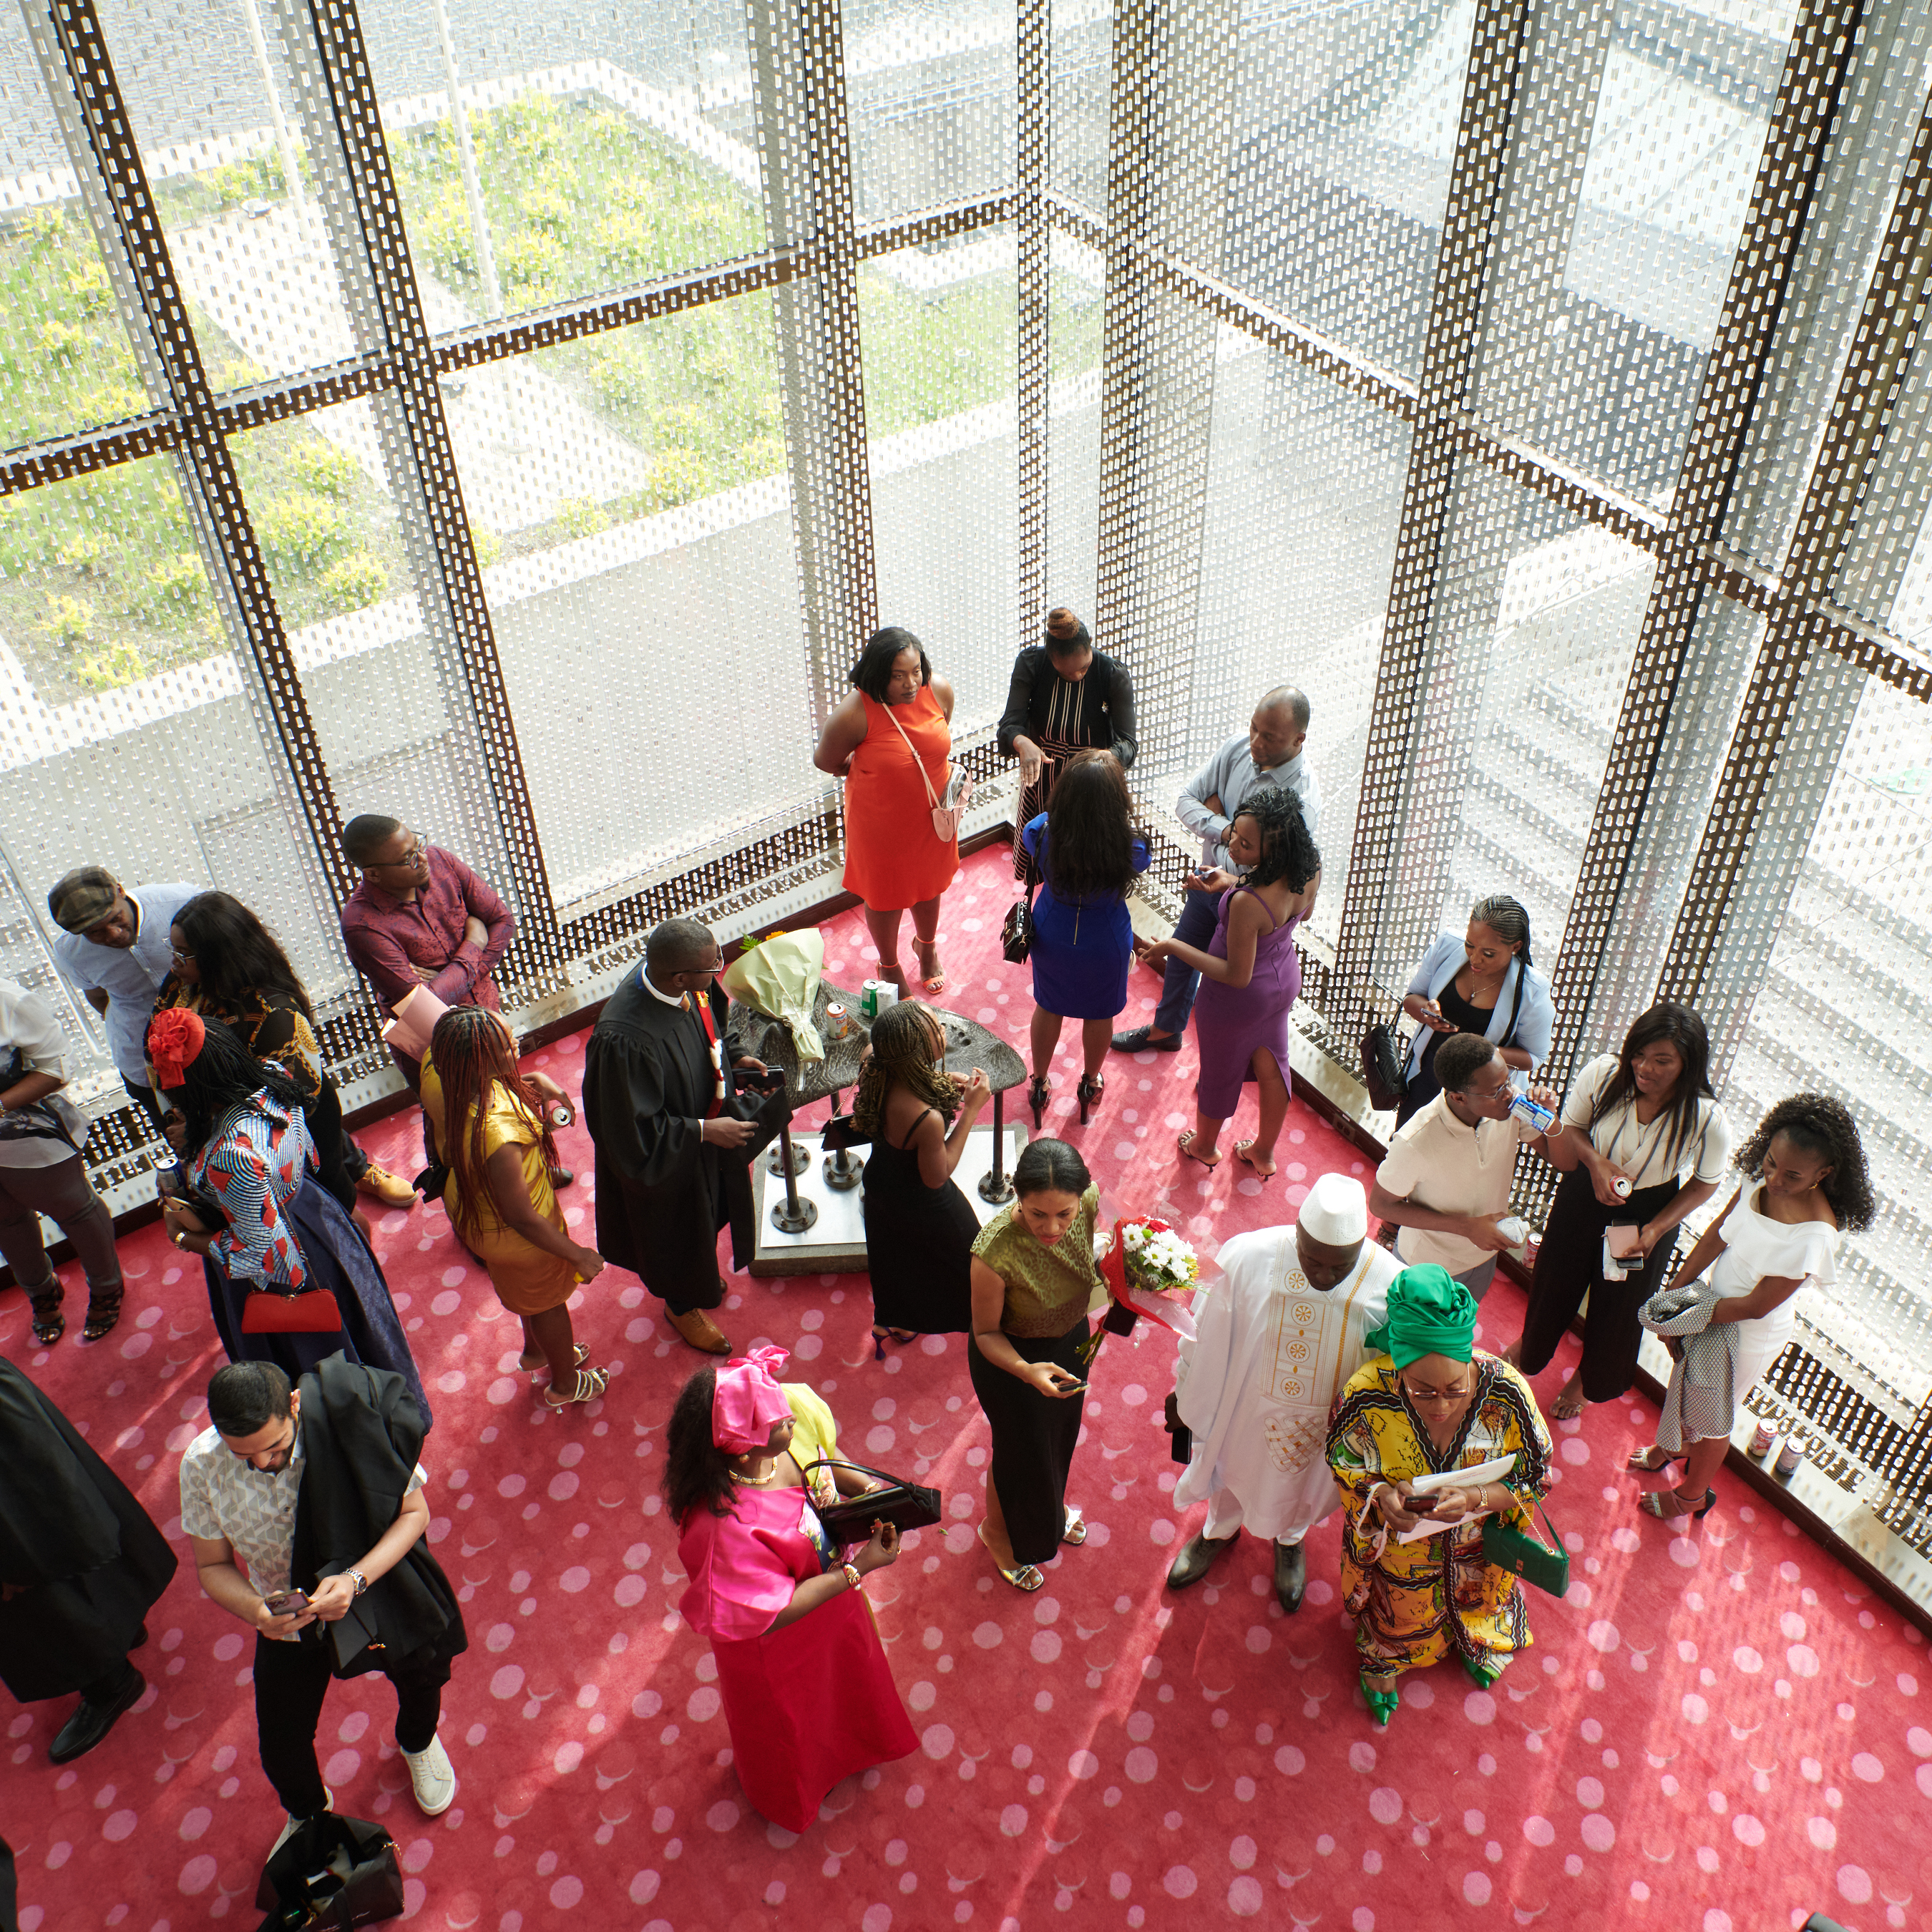 Réception élégante avec invités divers dans un cadre universitaire moderne.